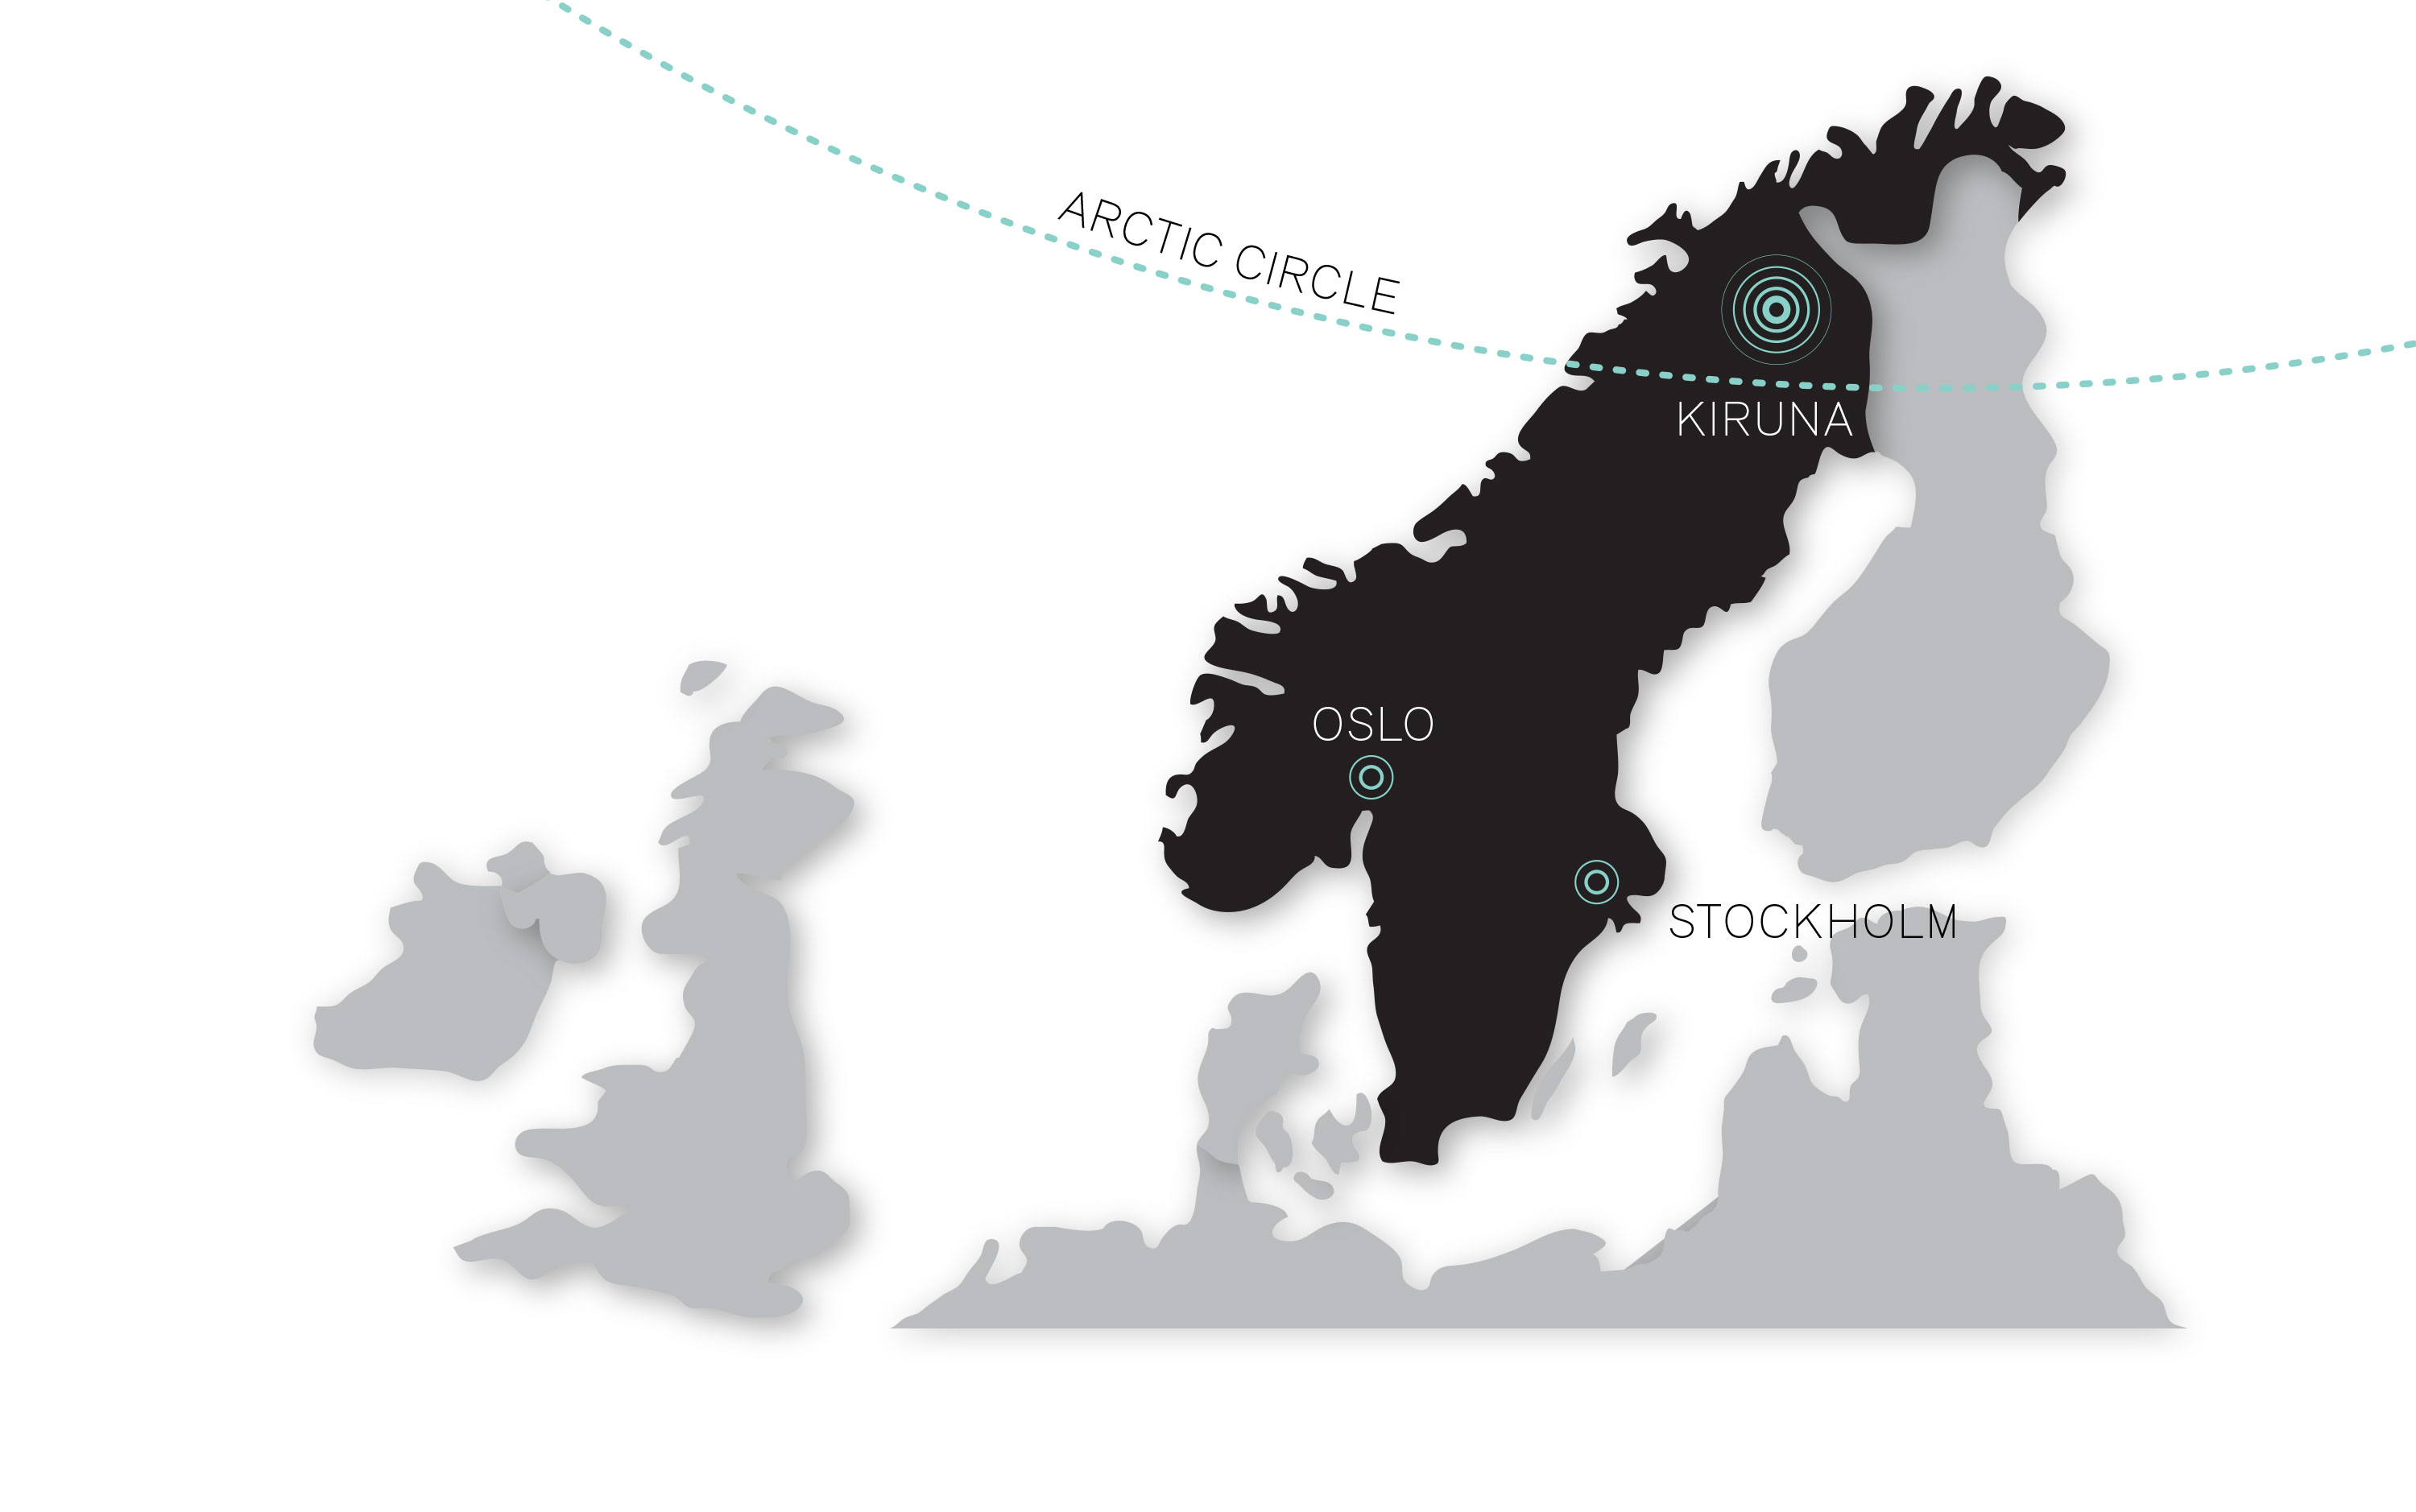 Localização geográfica de Kiruna. Foto – Divulgação White Architecture